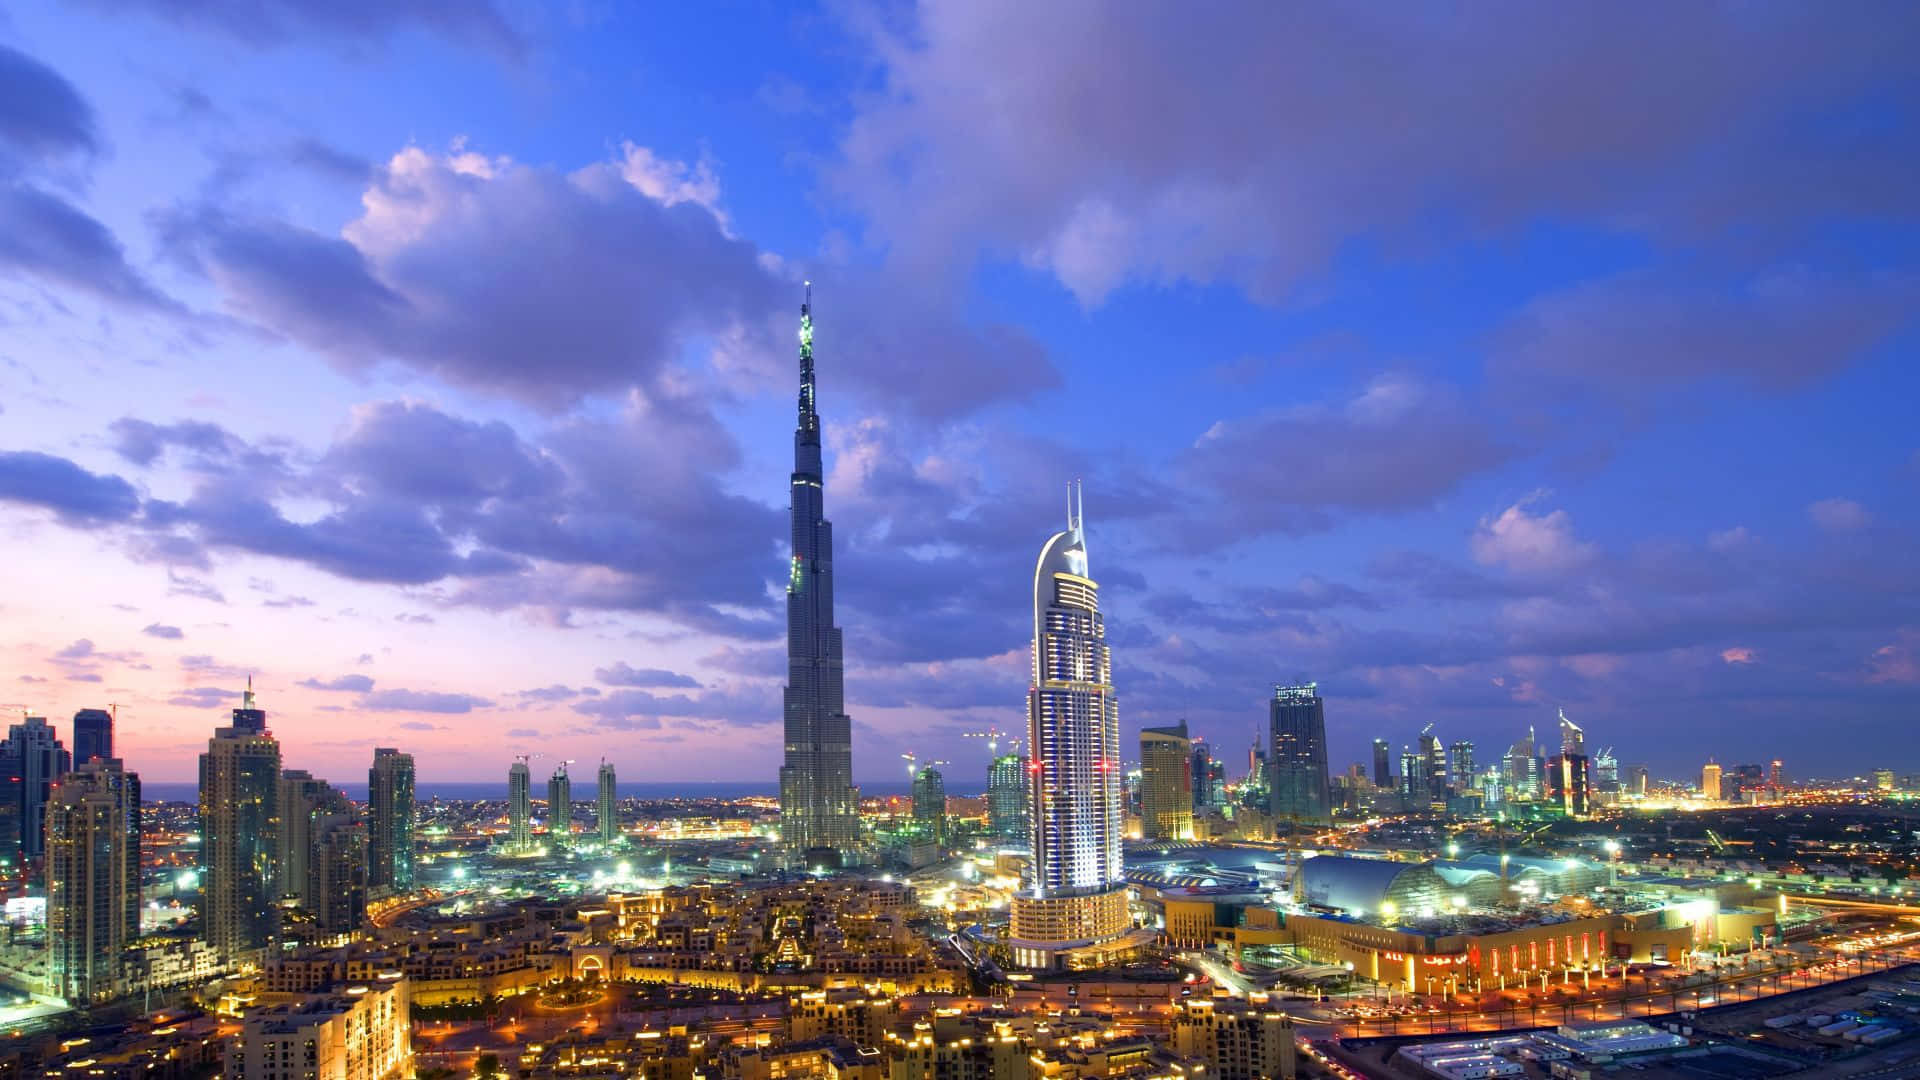 Maestosoburj Khalifa Illuminato Contro Un Cielo Notturno.